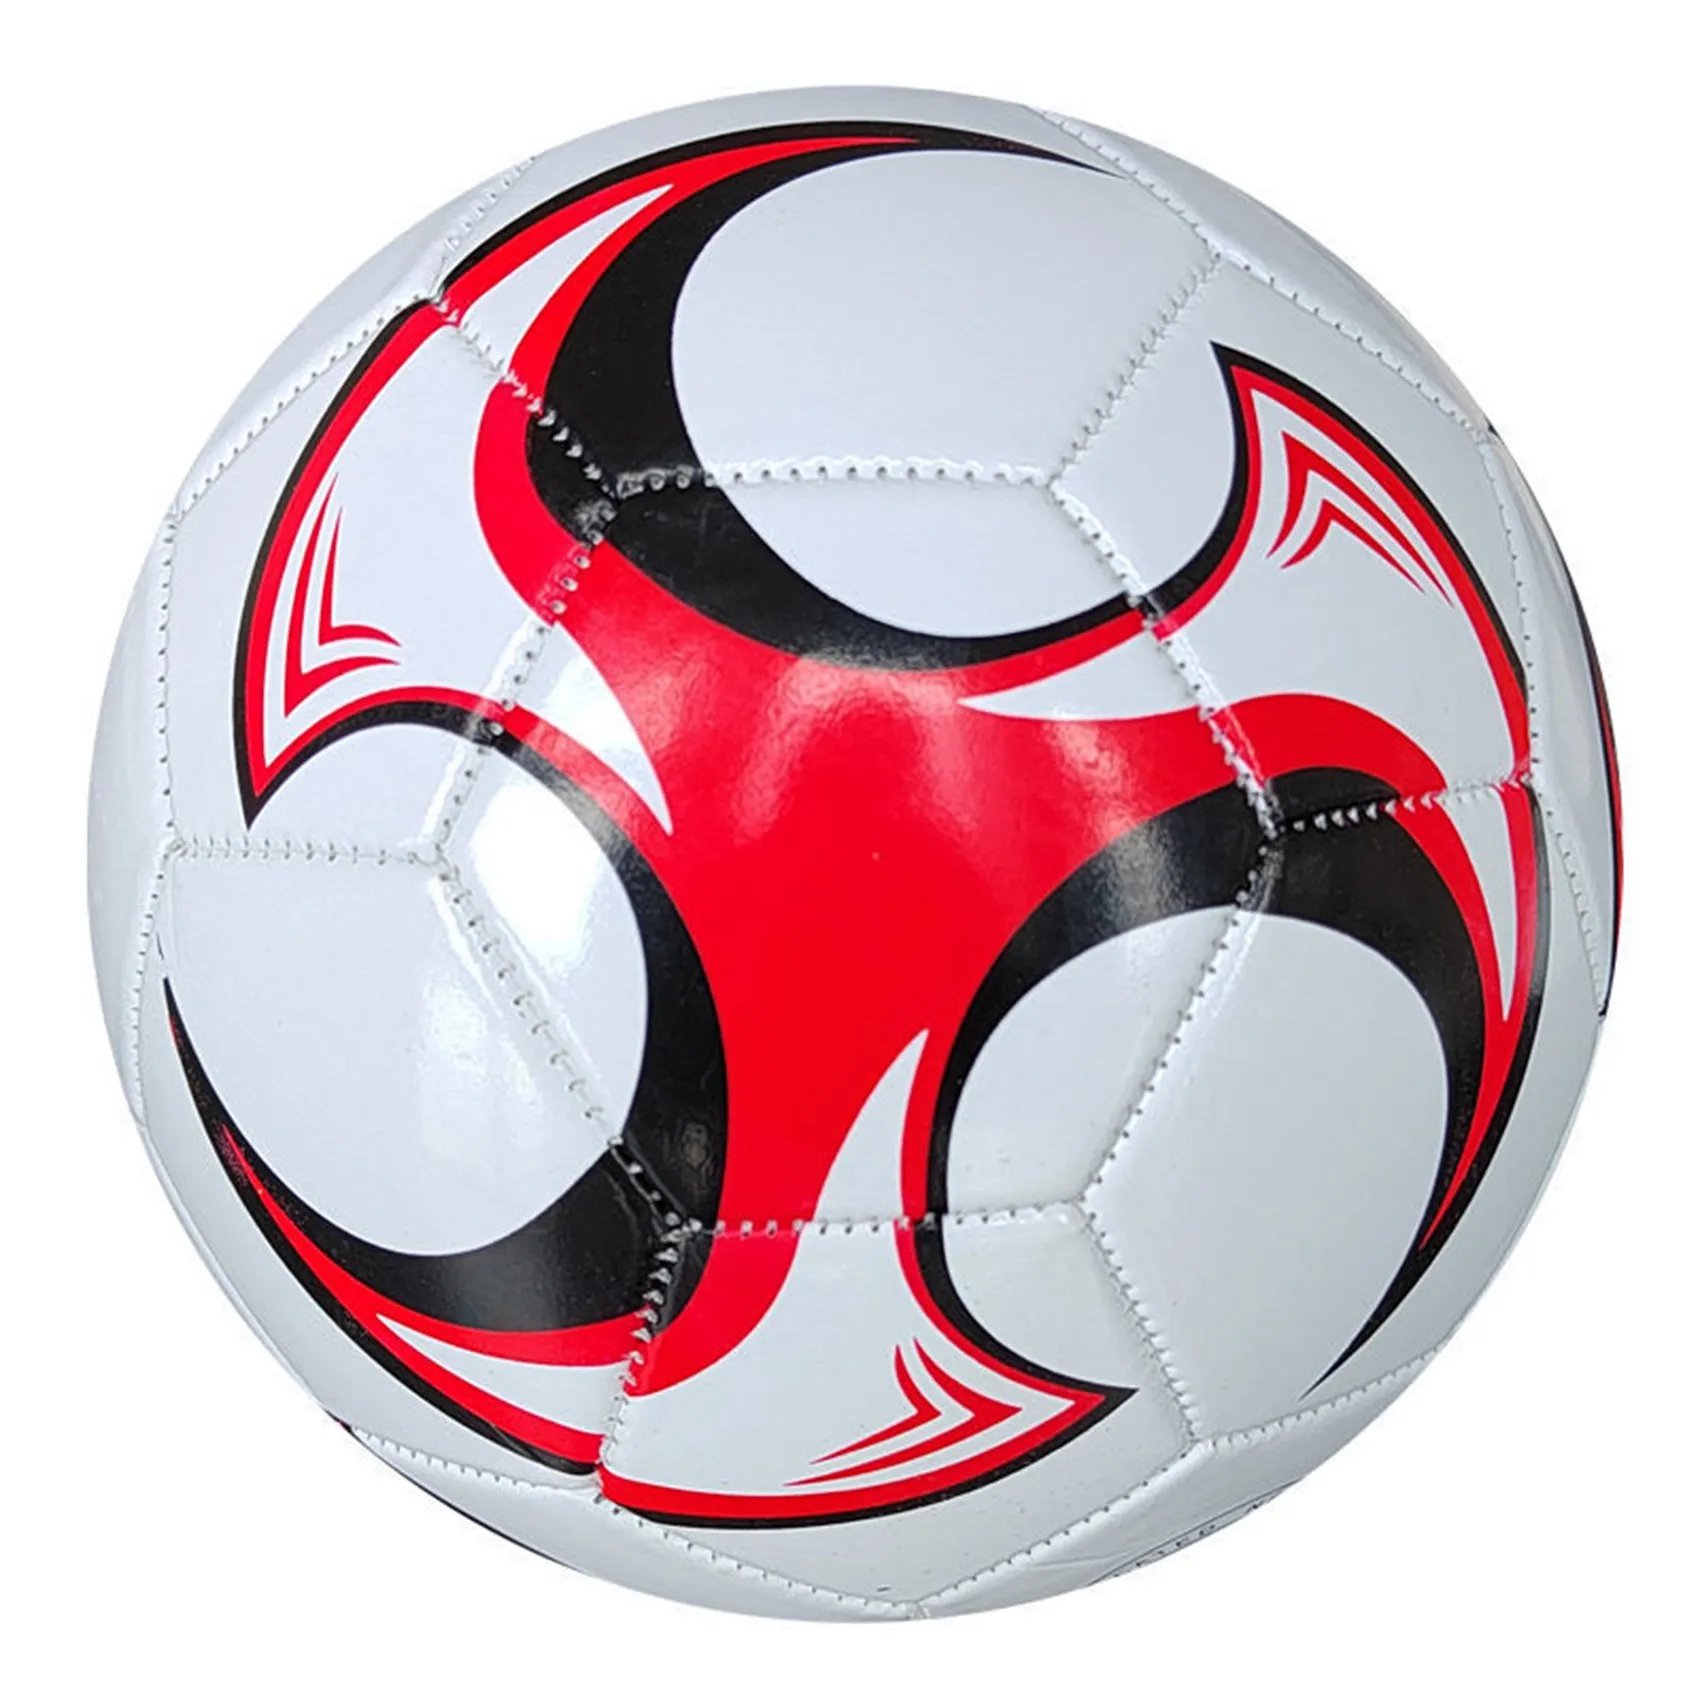 

Футбольный мяч, размер 5, для профессиональных соревнований по футболу, нескользящая футбольная игра для дома и улицы, для тренировок по футболу